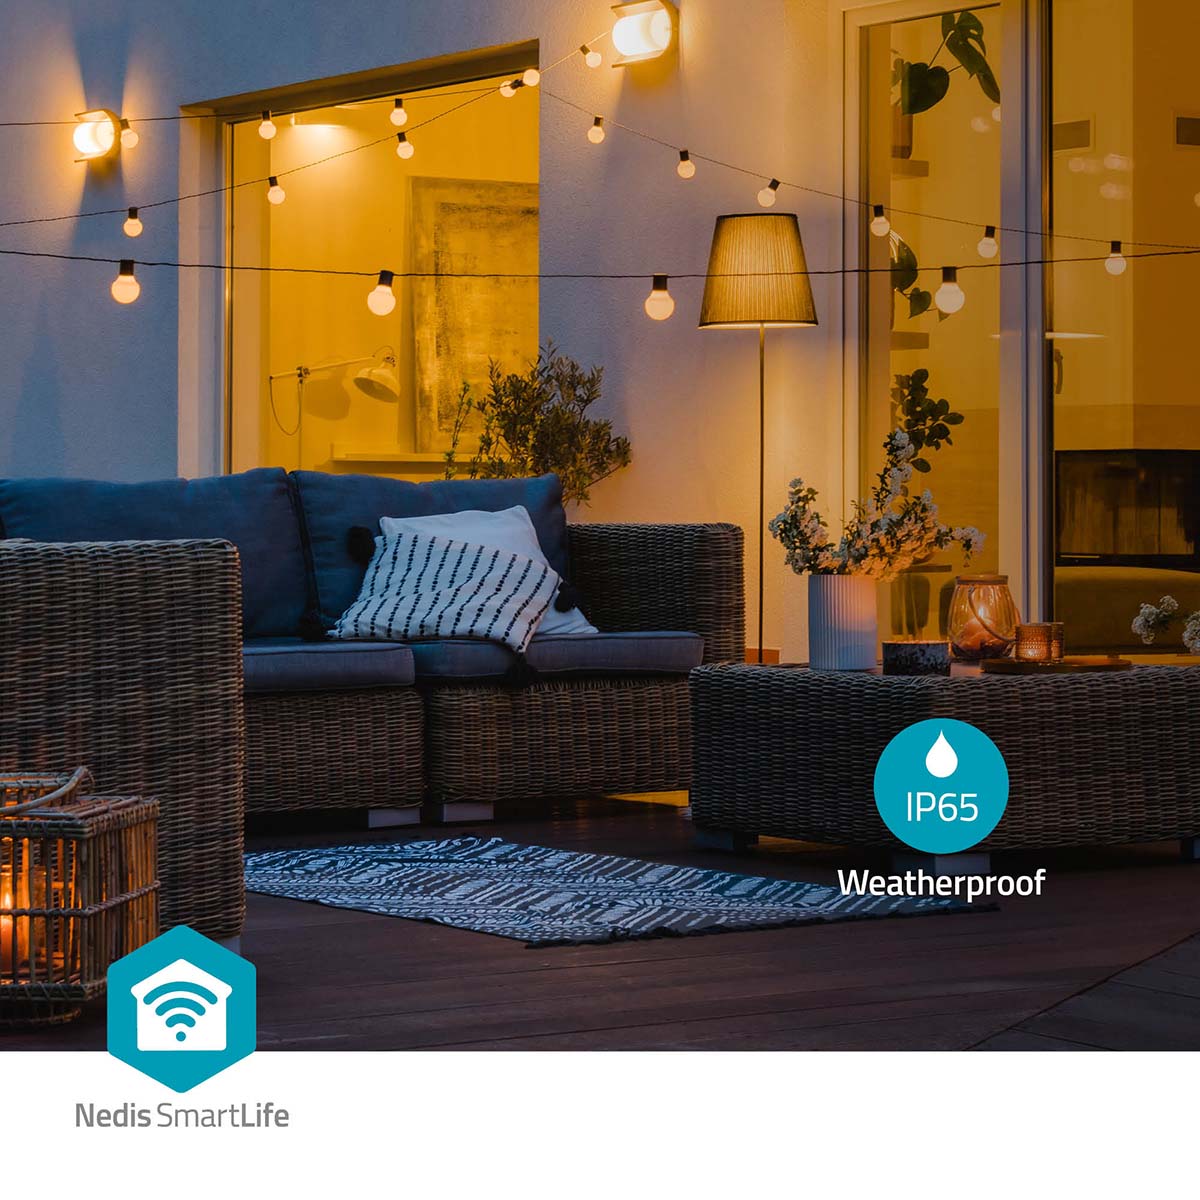 Luzes decorativas Nedis Wi-Fi branco quente (9m): iluminação inteligente para criar ambientes acolhedores com facilidade e estilo.